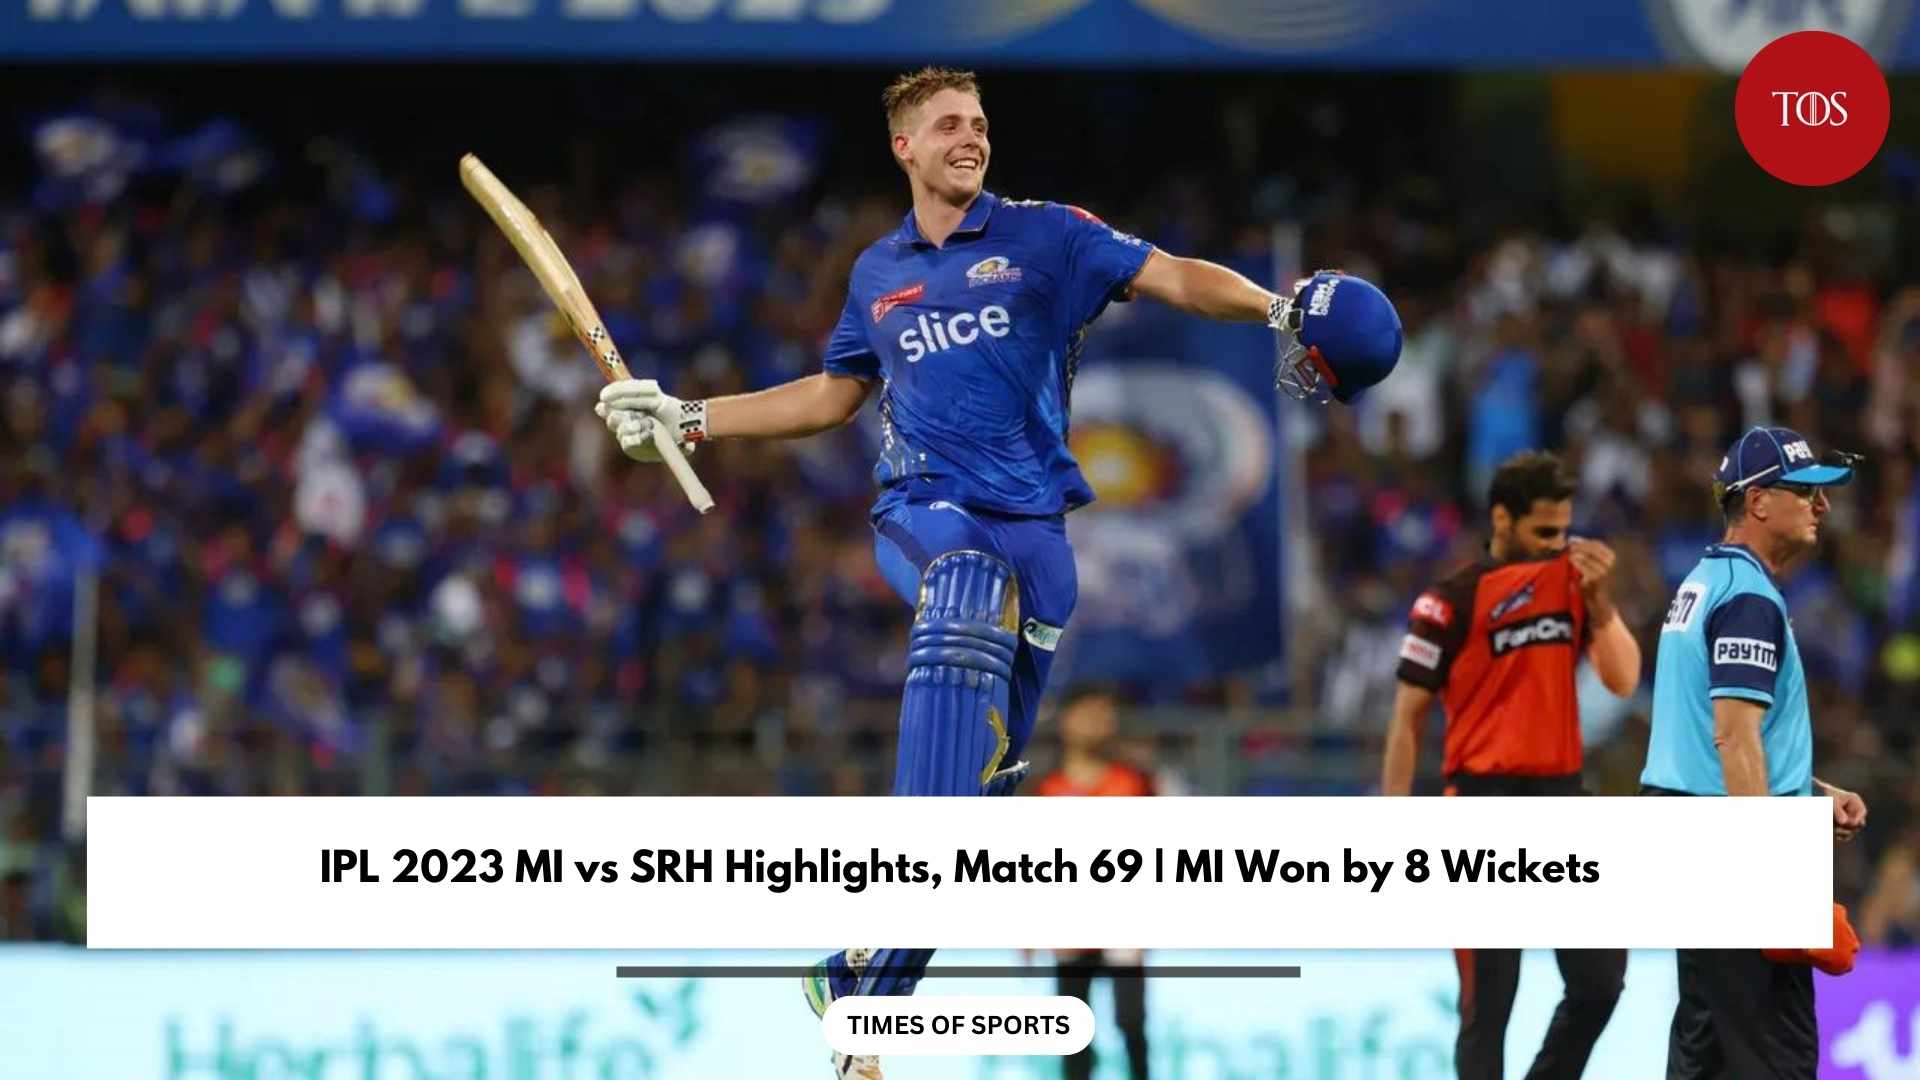 IPL 2023 MI vs SRH Highlights